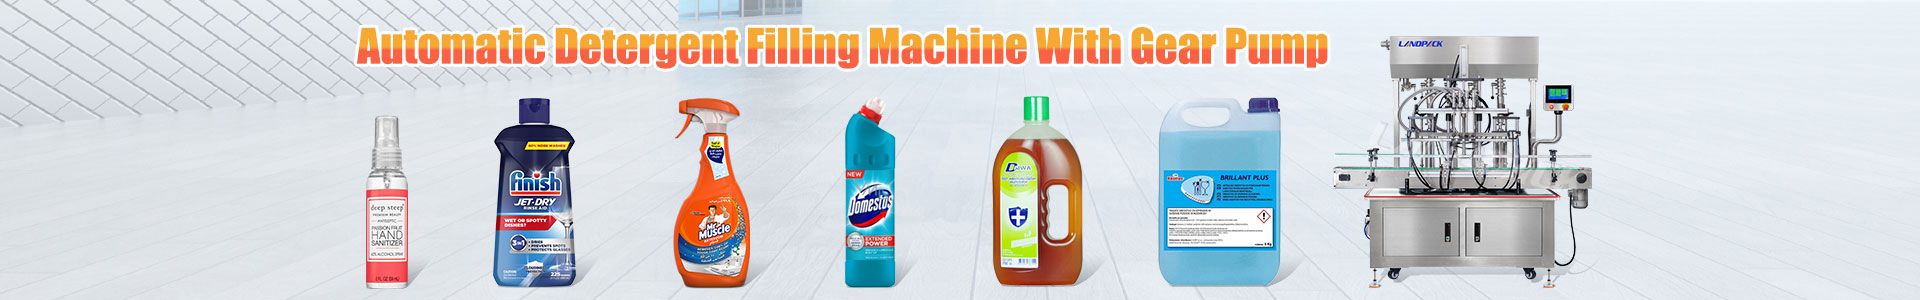 detergent filling machine